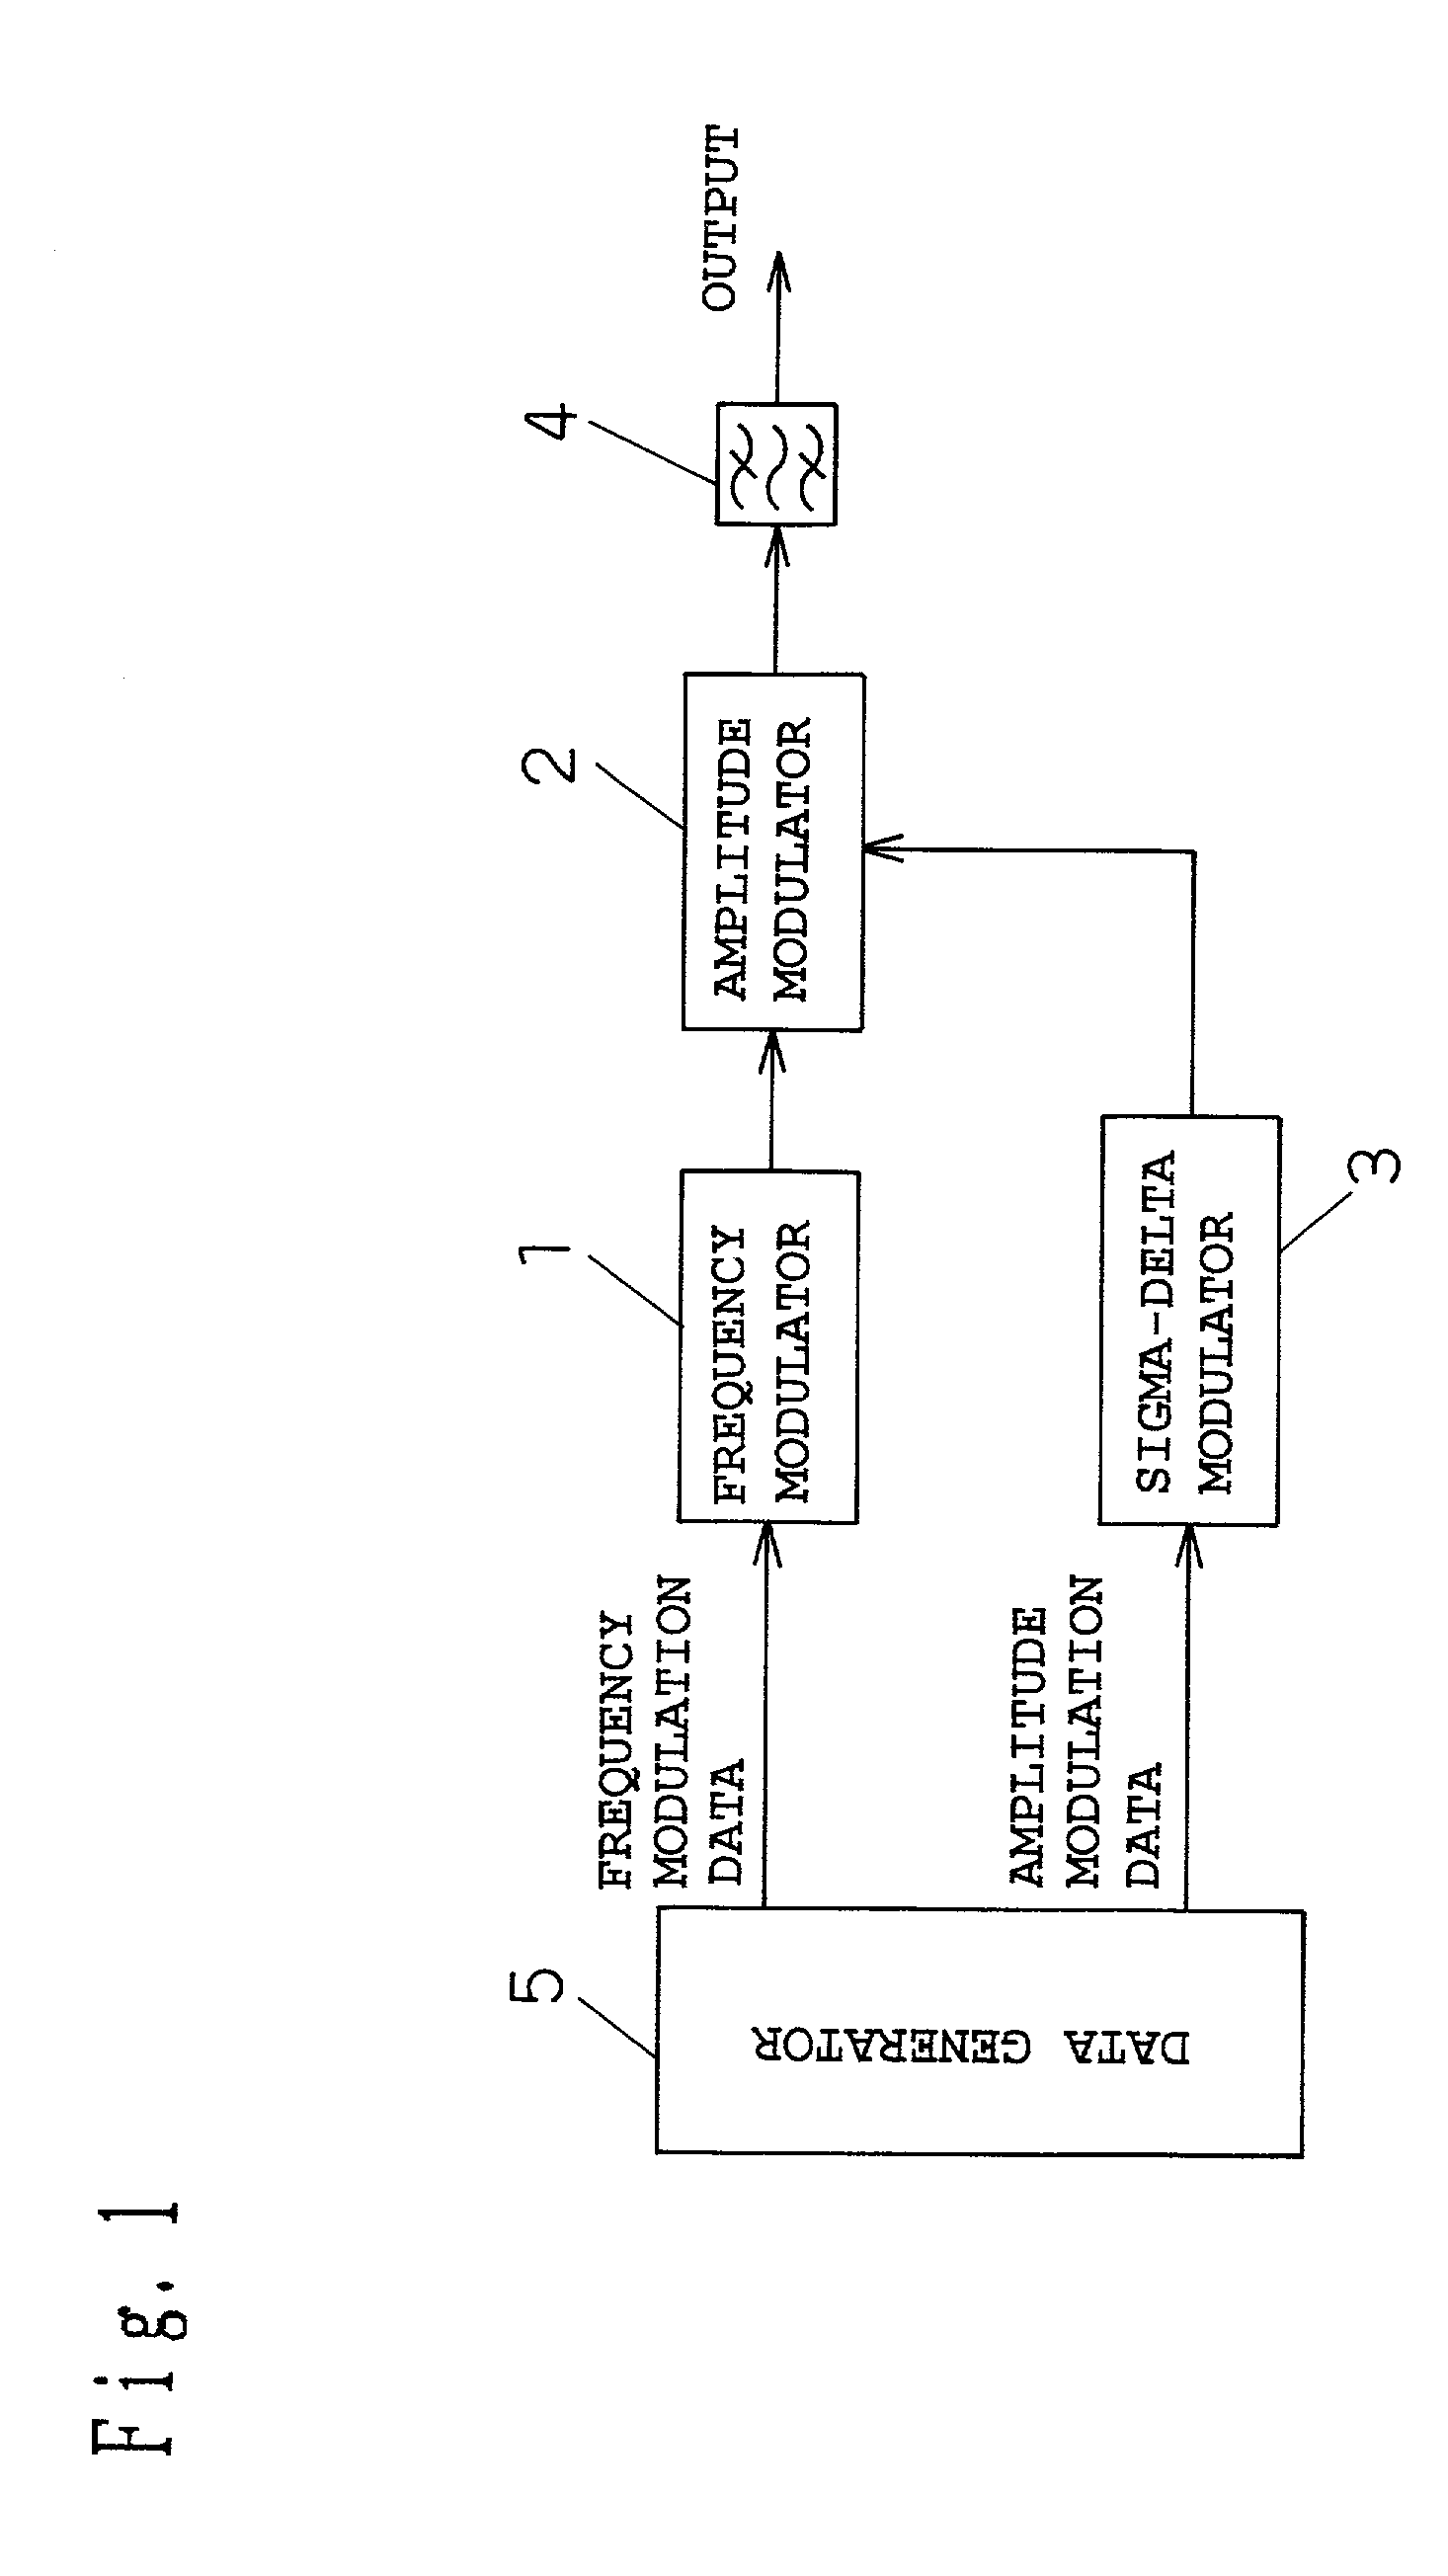 Transmitting circuit apparatus and method